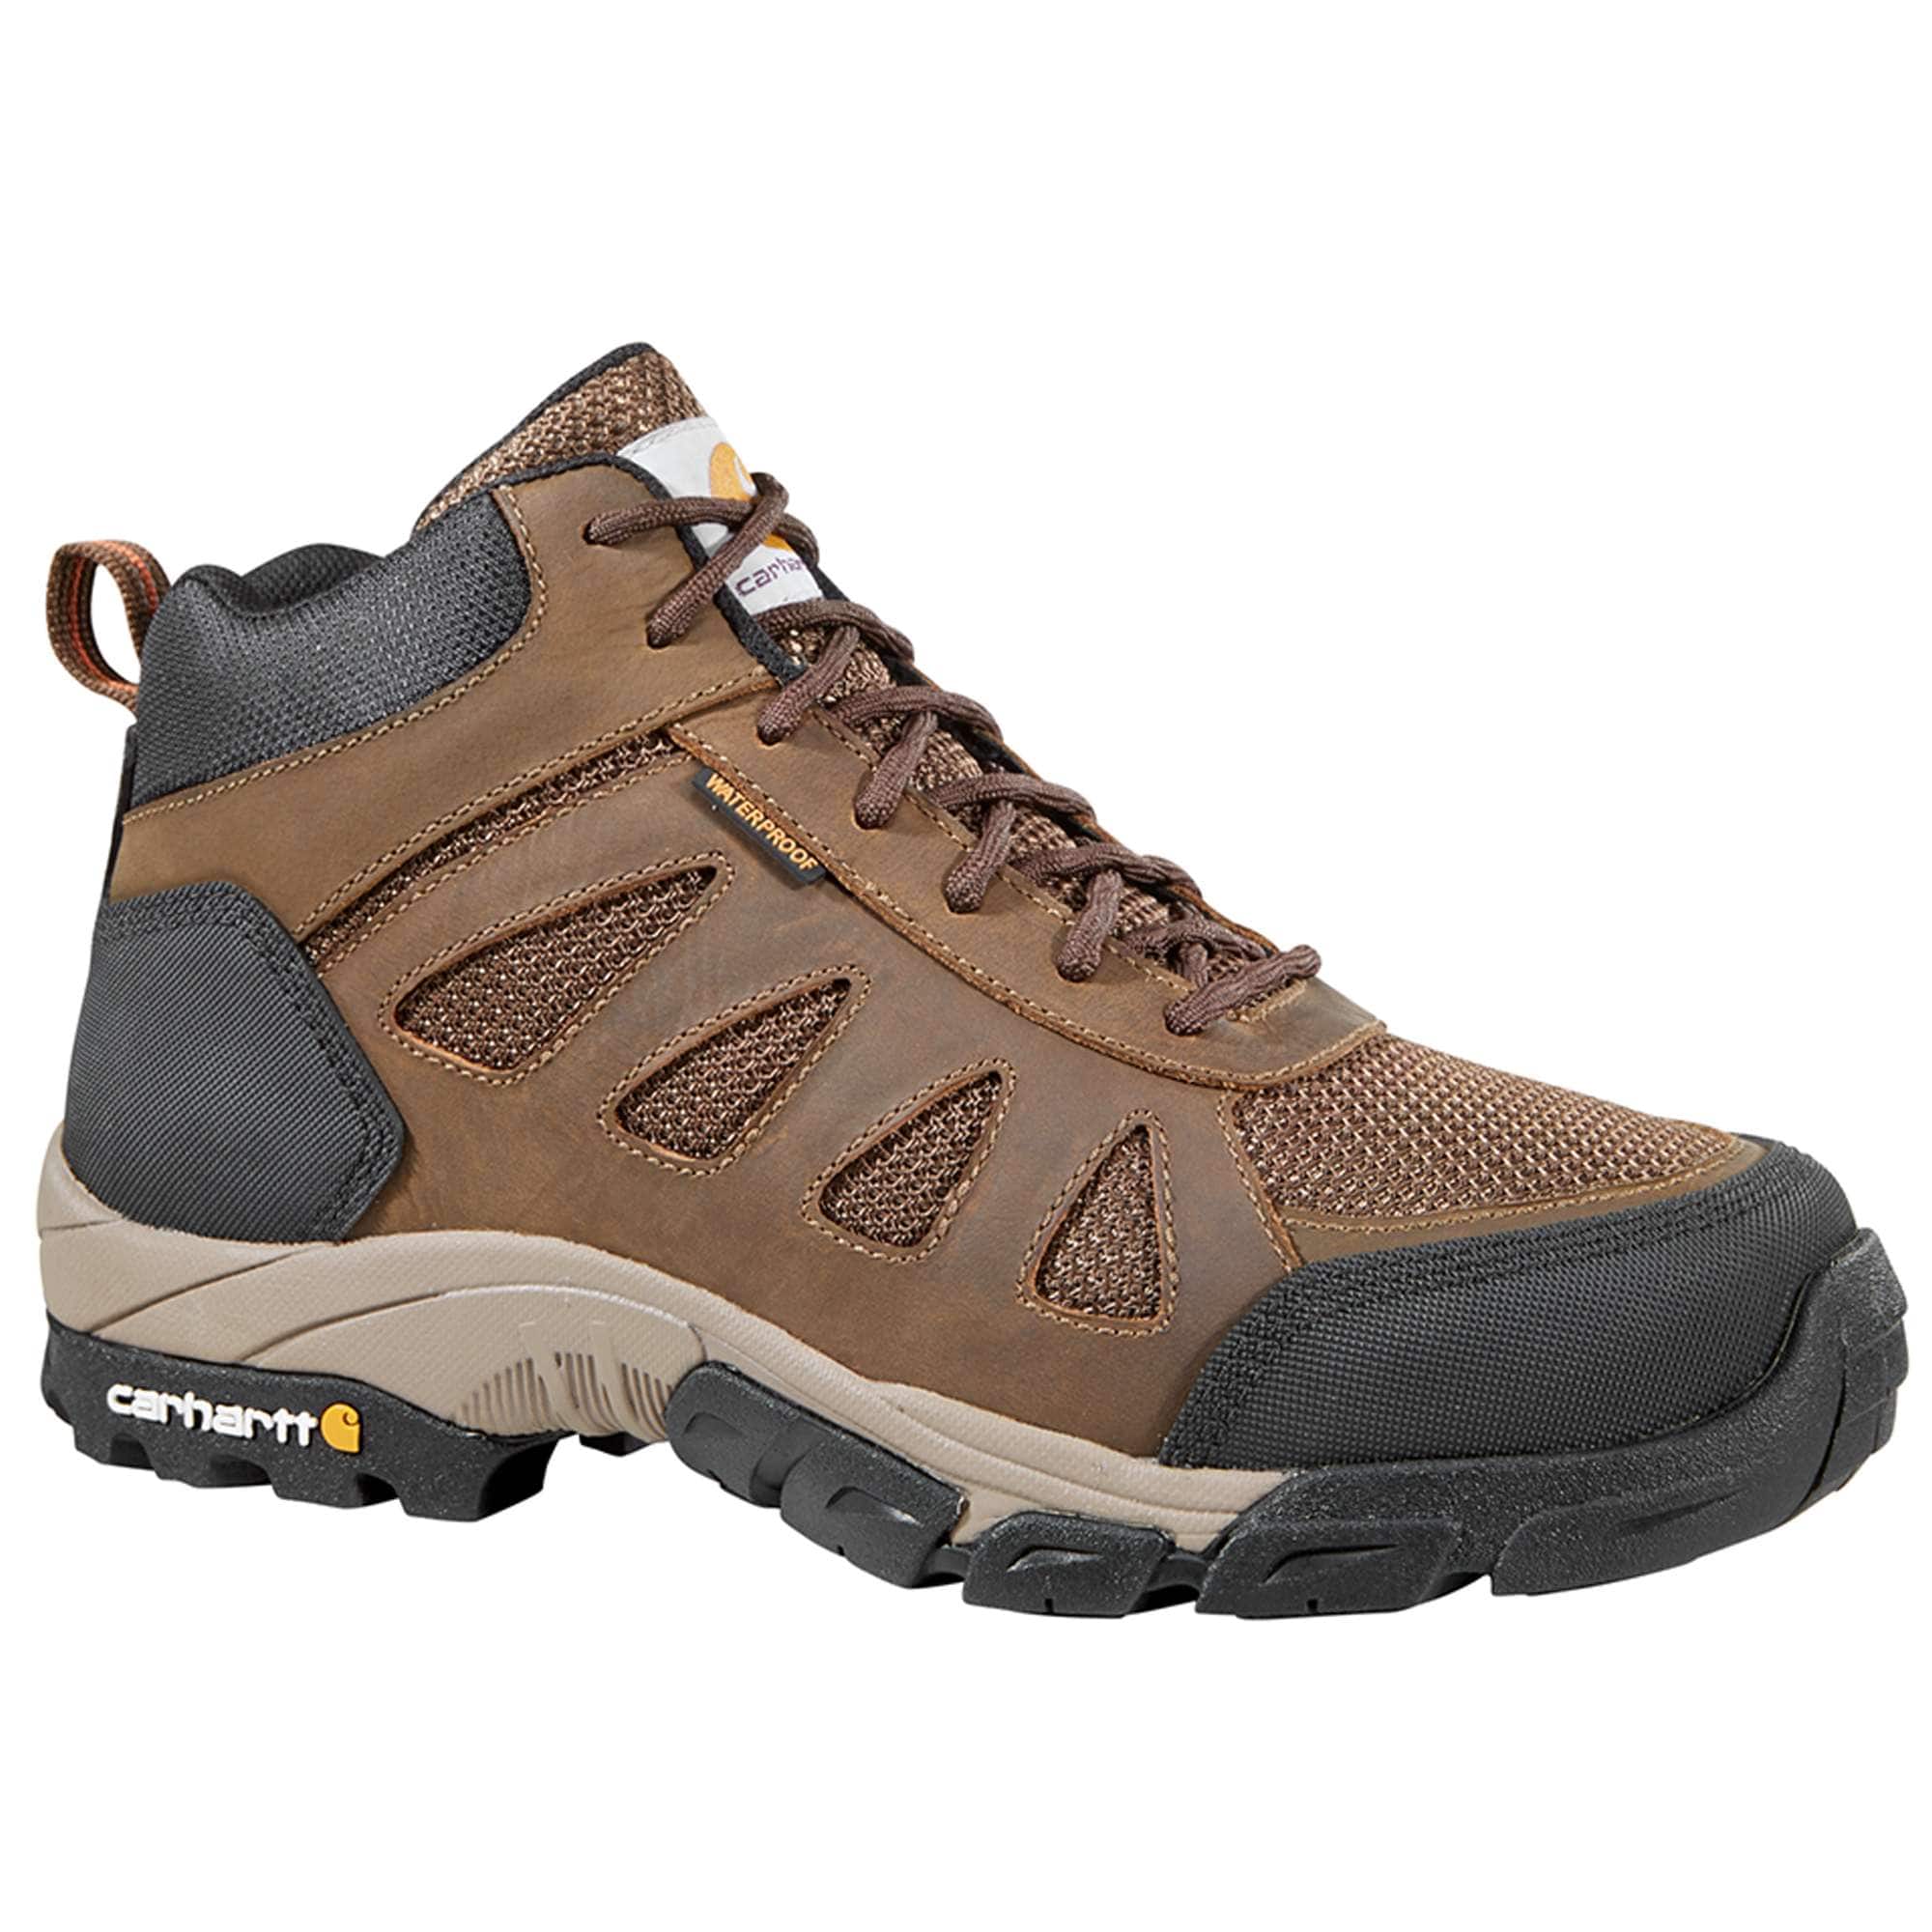 Men's Hiking Boots | Carhartt